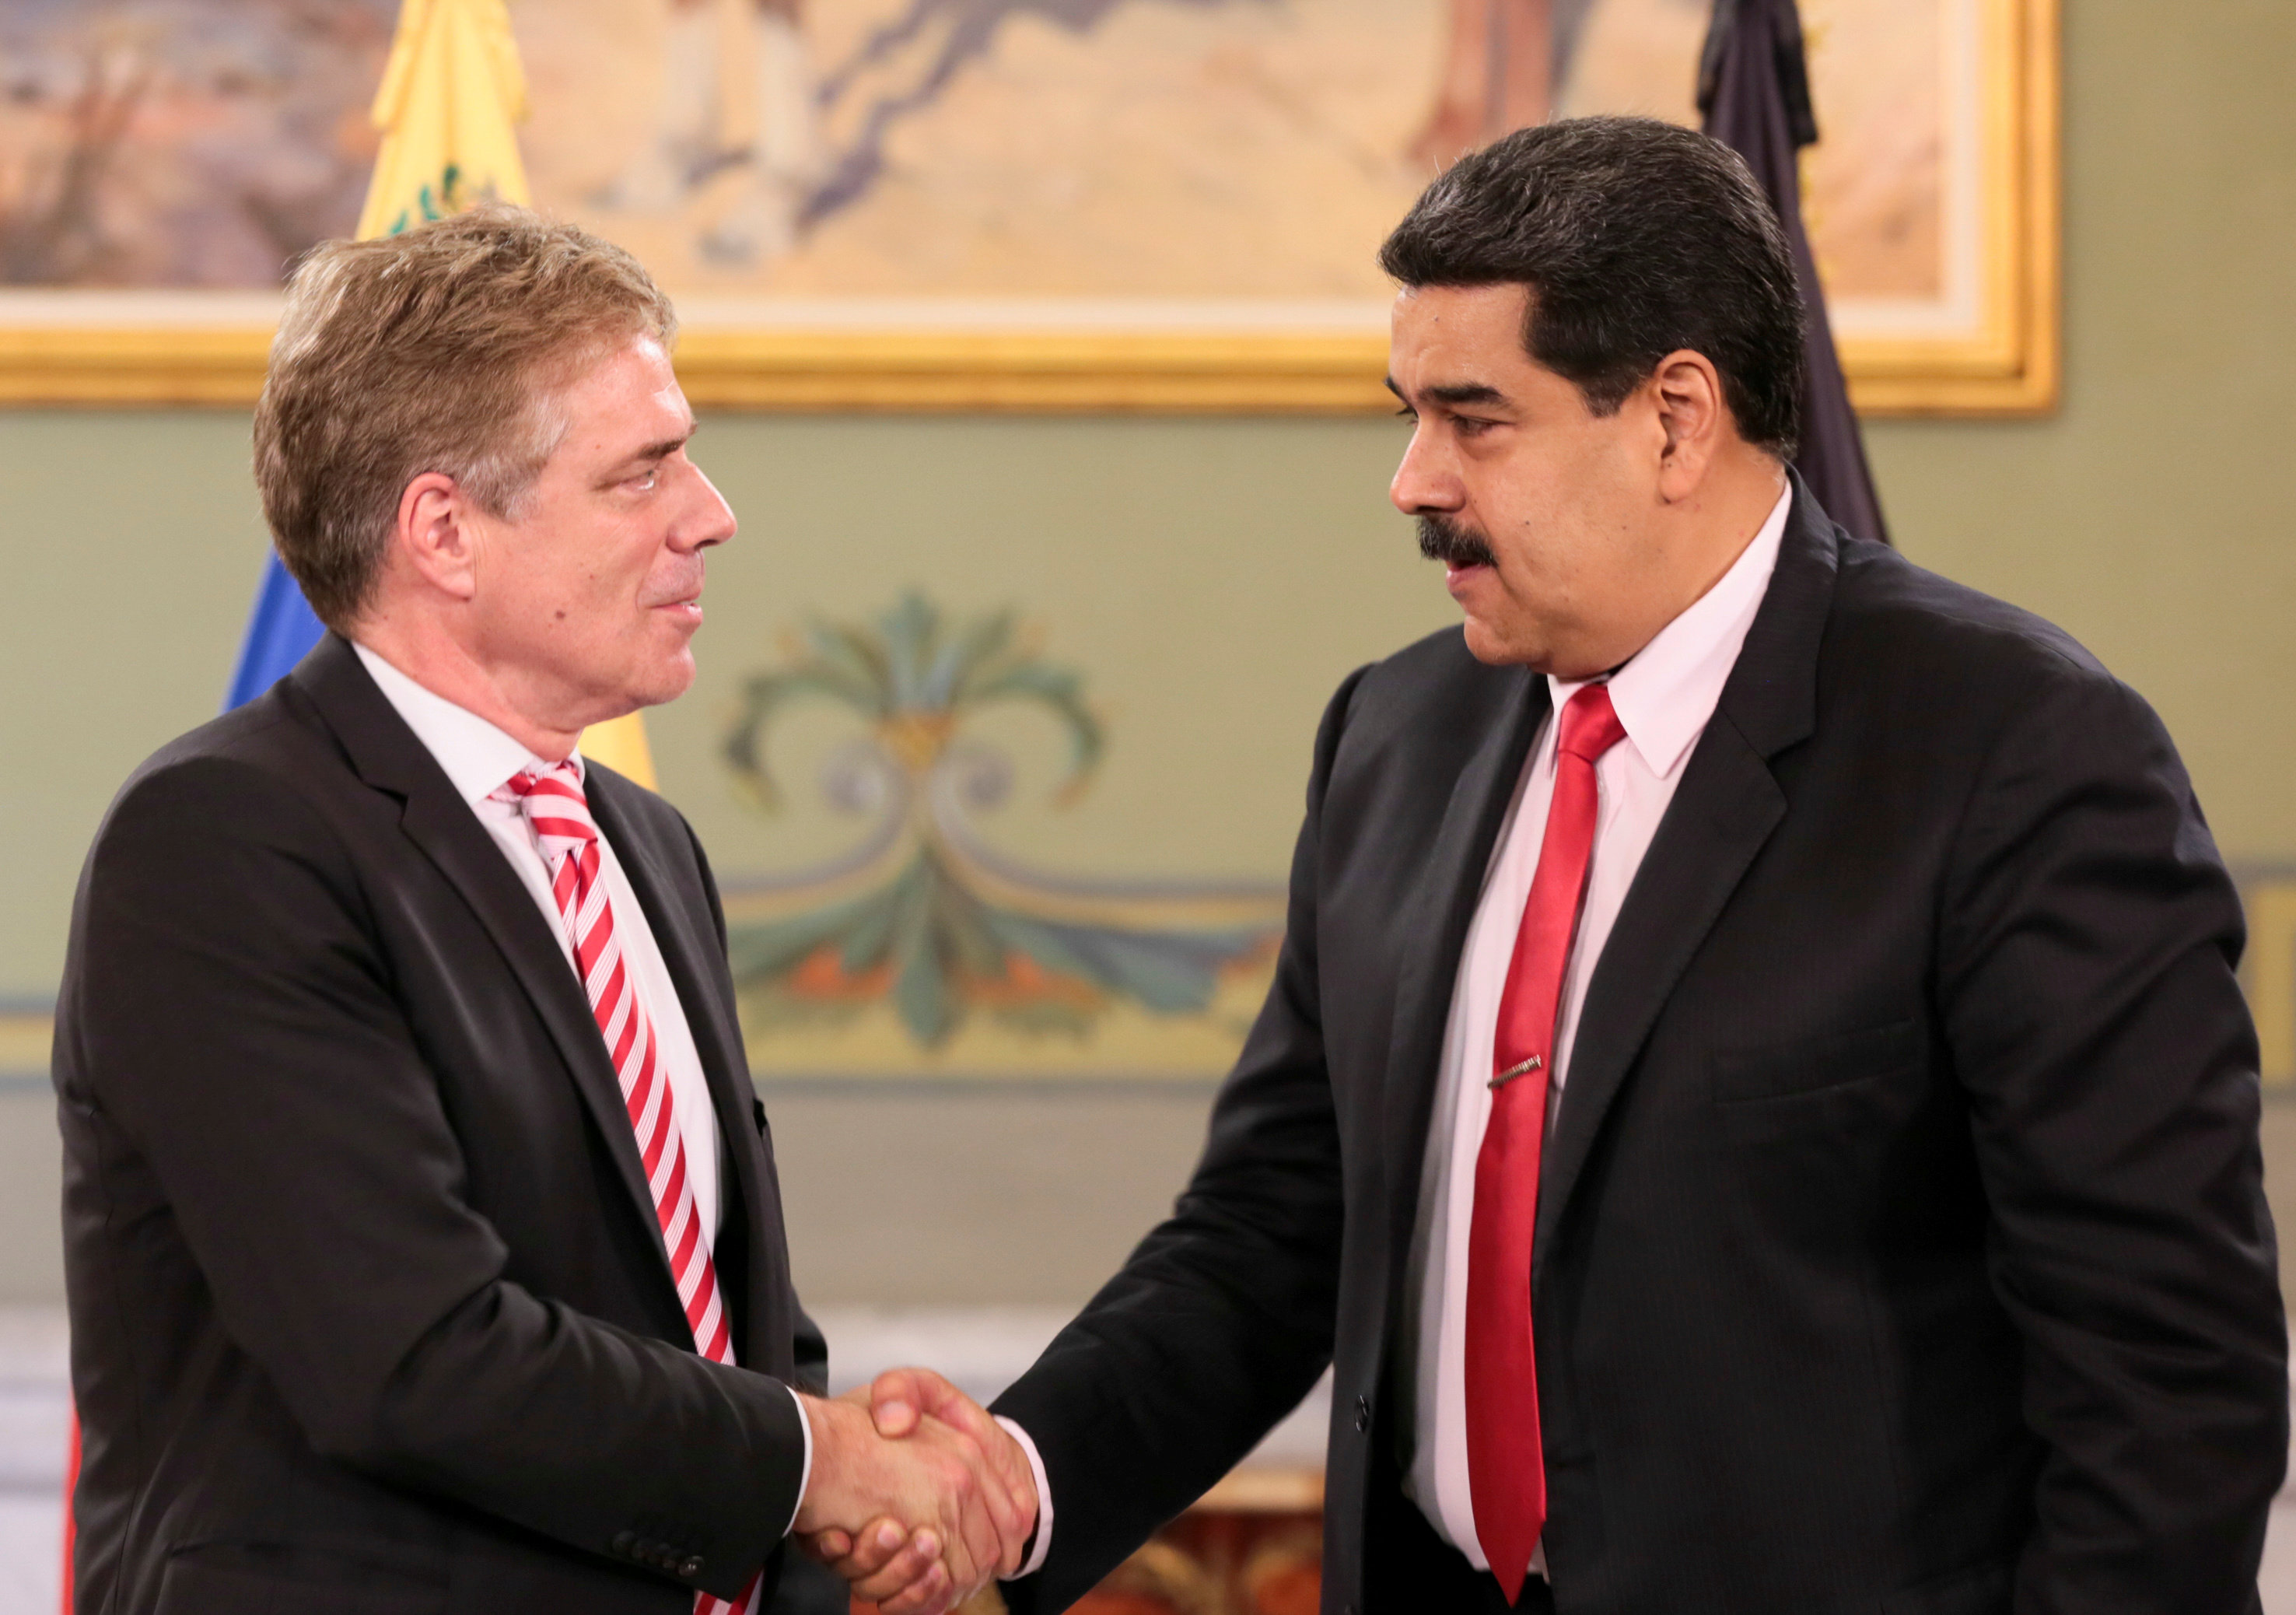 Foto: El presidente de Venezuela, Nicolás Maduro, le da la mano al embajador de Alemania en Venezuela, Daniel Martin Kriener, 6 marzo 2019